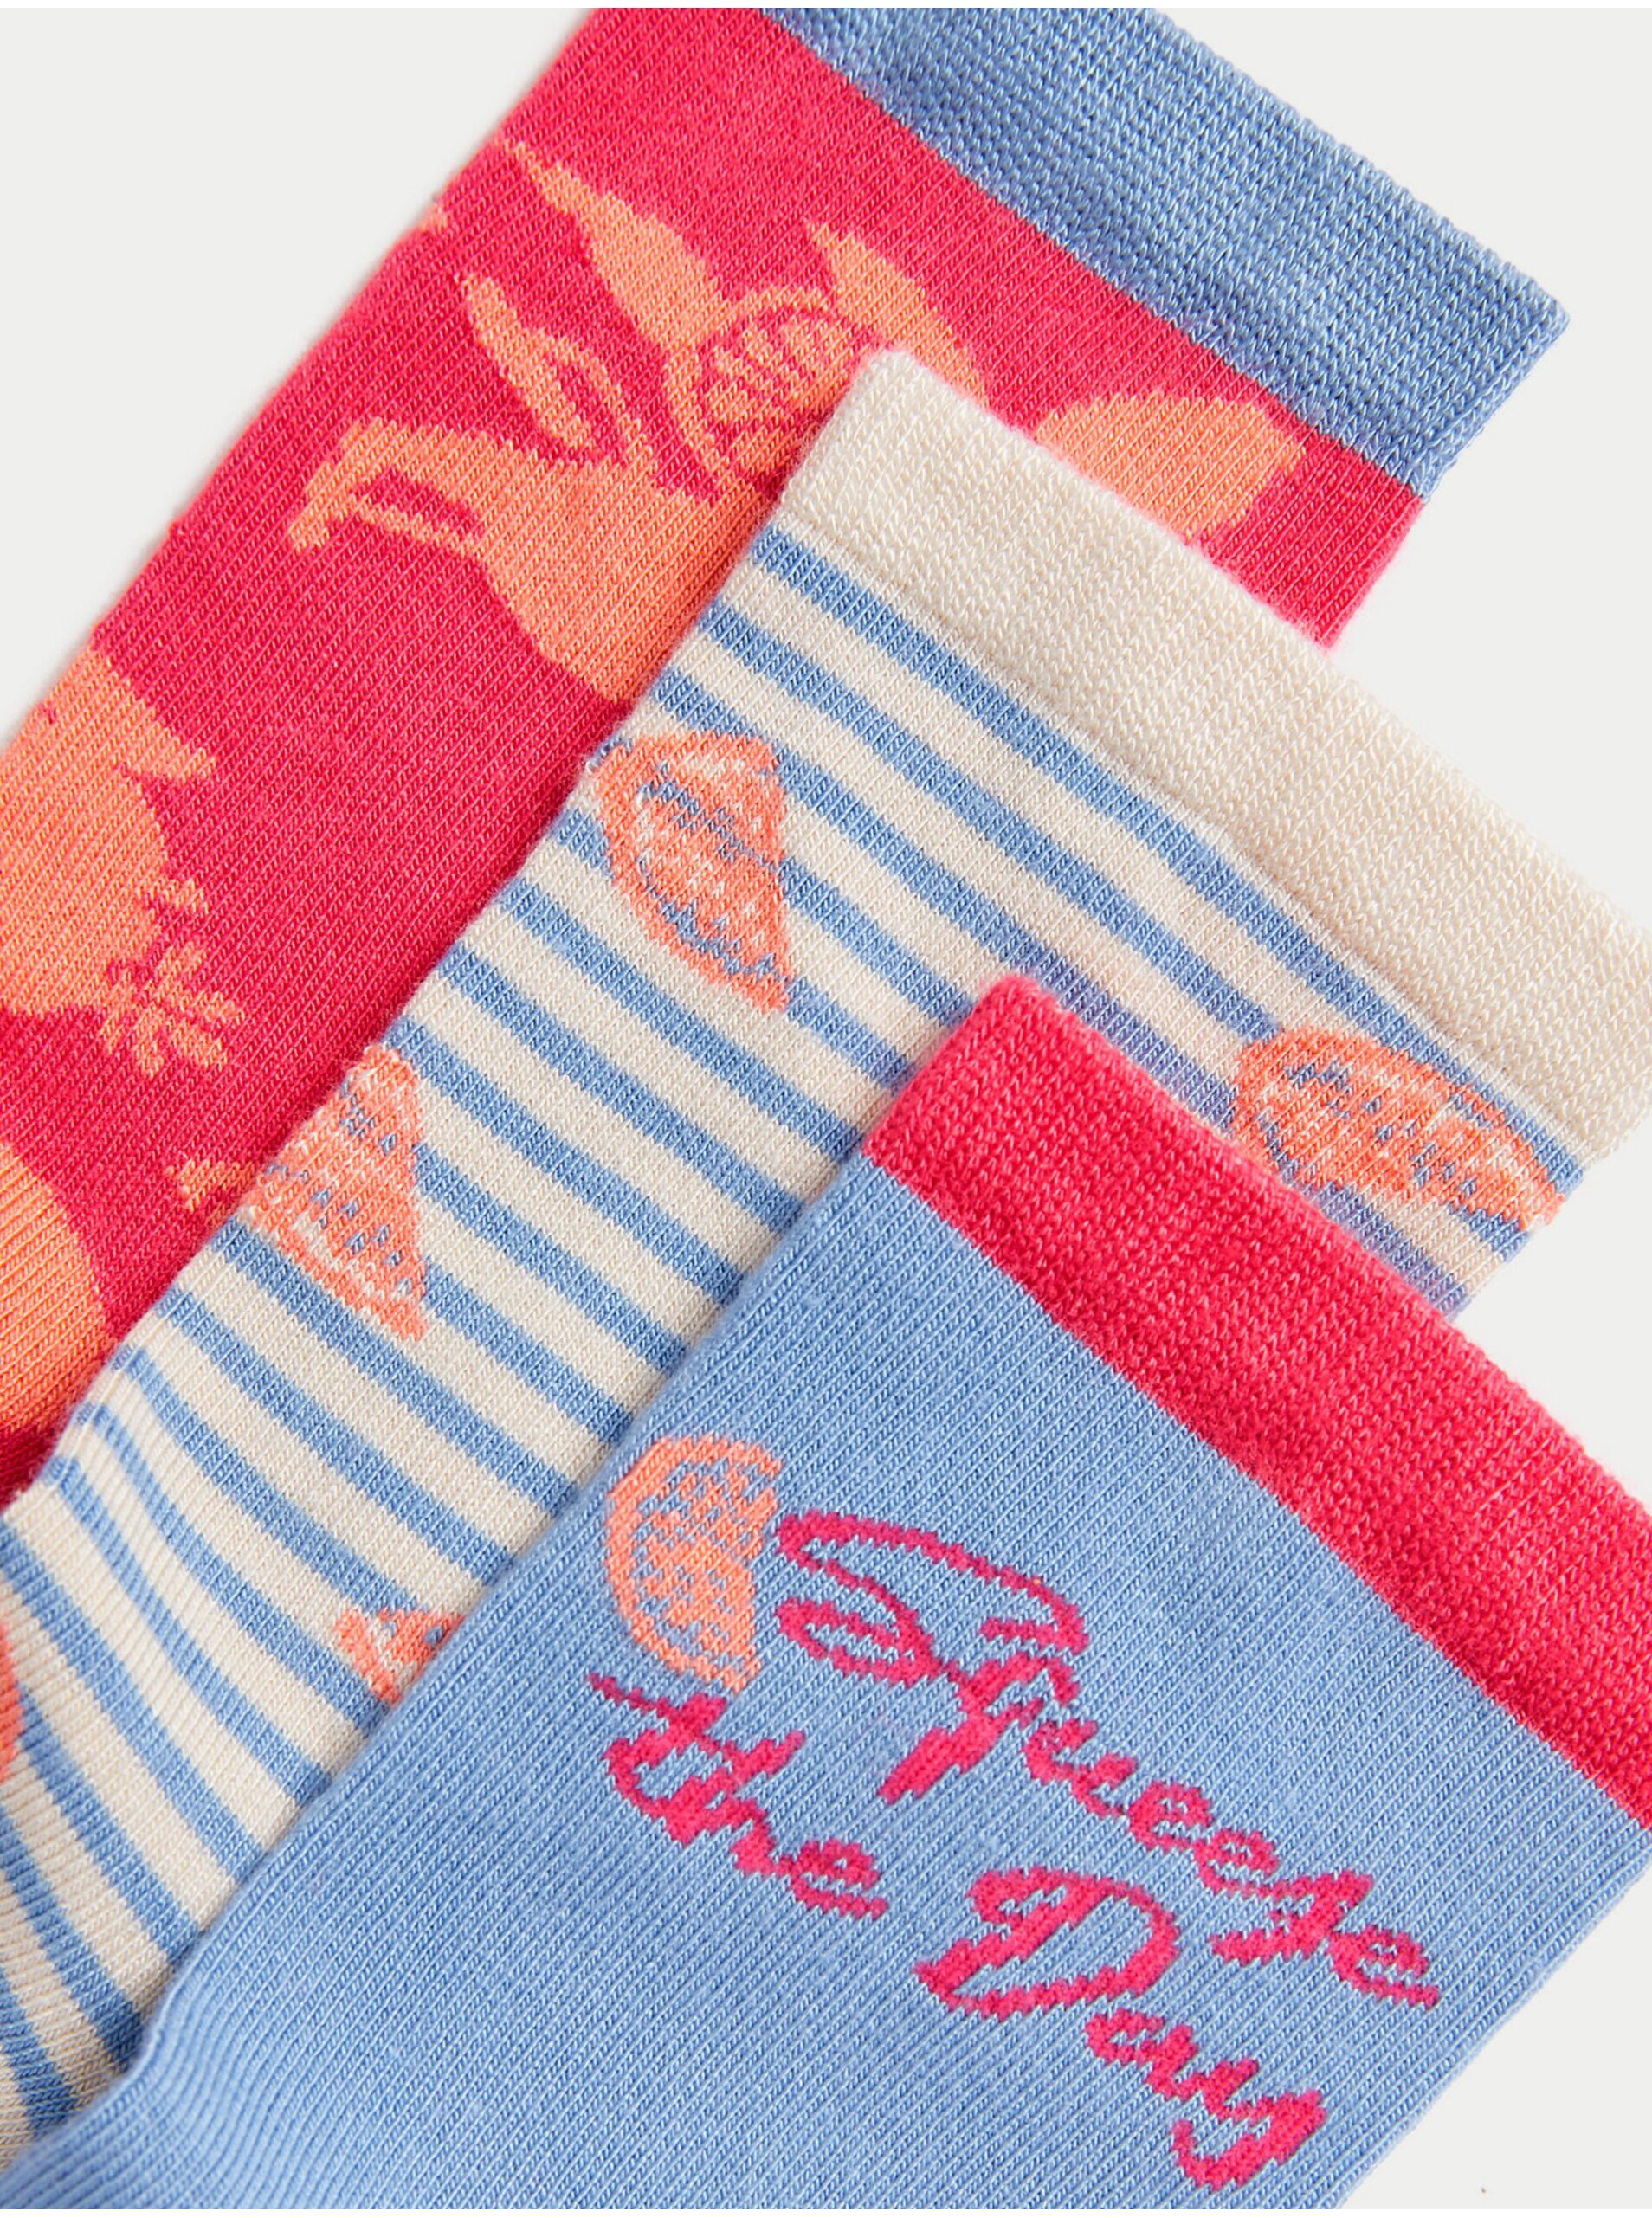 Levně Sada tří párů dámských vzorovaných ponožek v modré a červené barvě Marks & Spencer